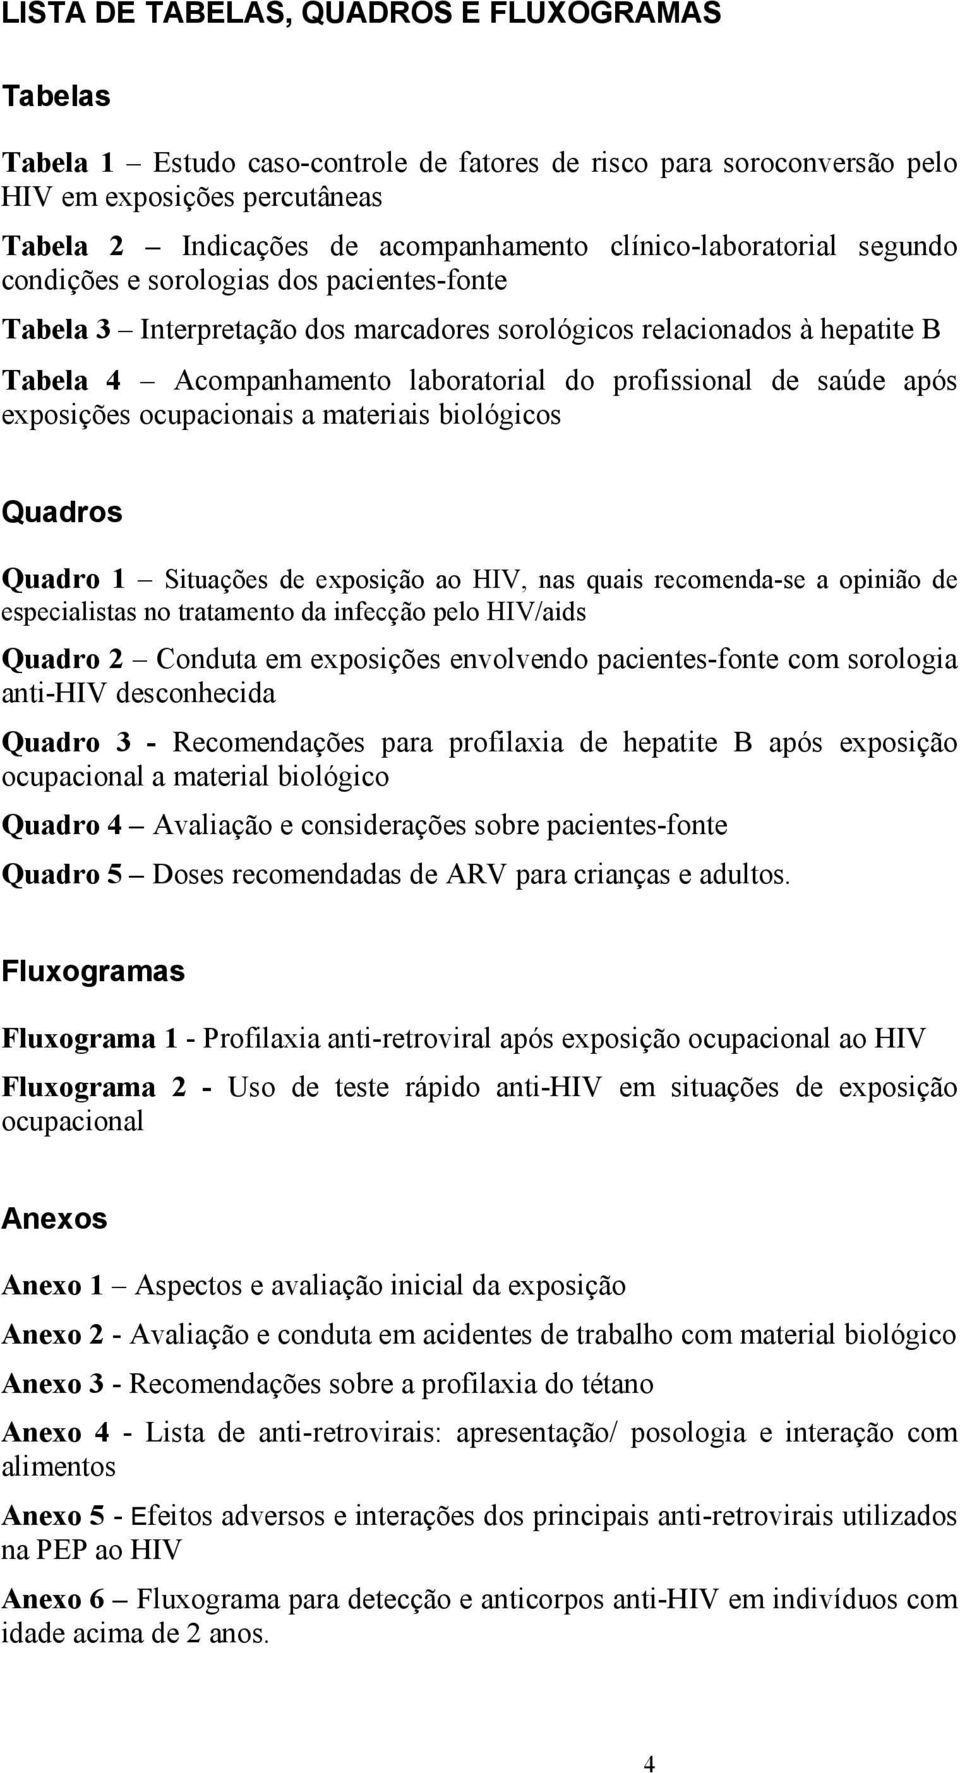 profissional de saúde após exposições ocupacionais a materiais biológicos Quadros Quadro 1 Situações de exposição ao HIV, nas quais recomenda-se a opinião de especialistas no tratamento da infecção